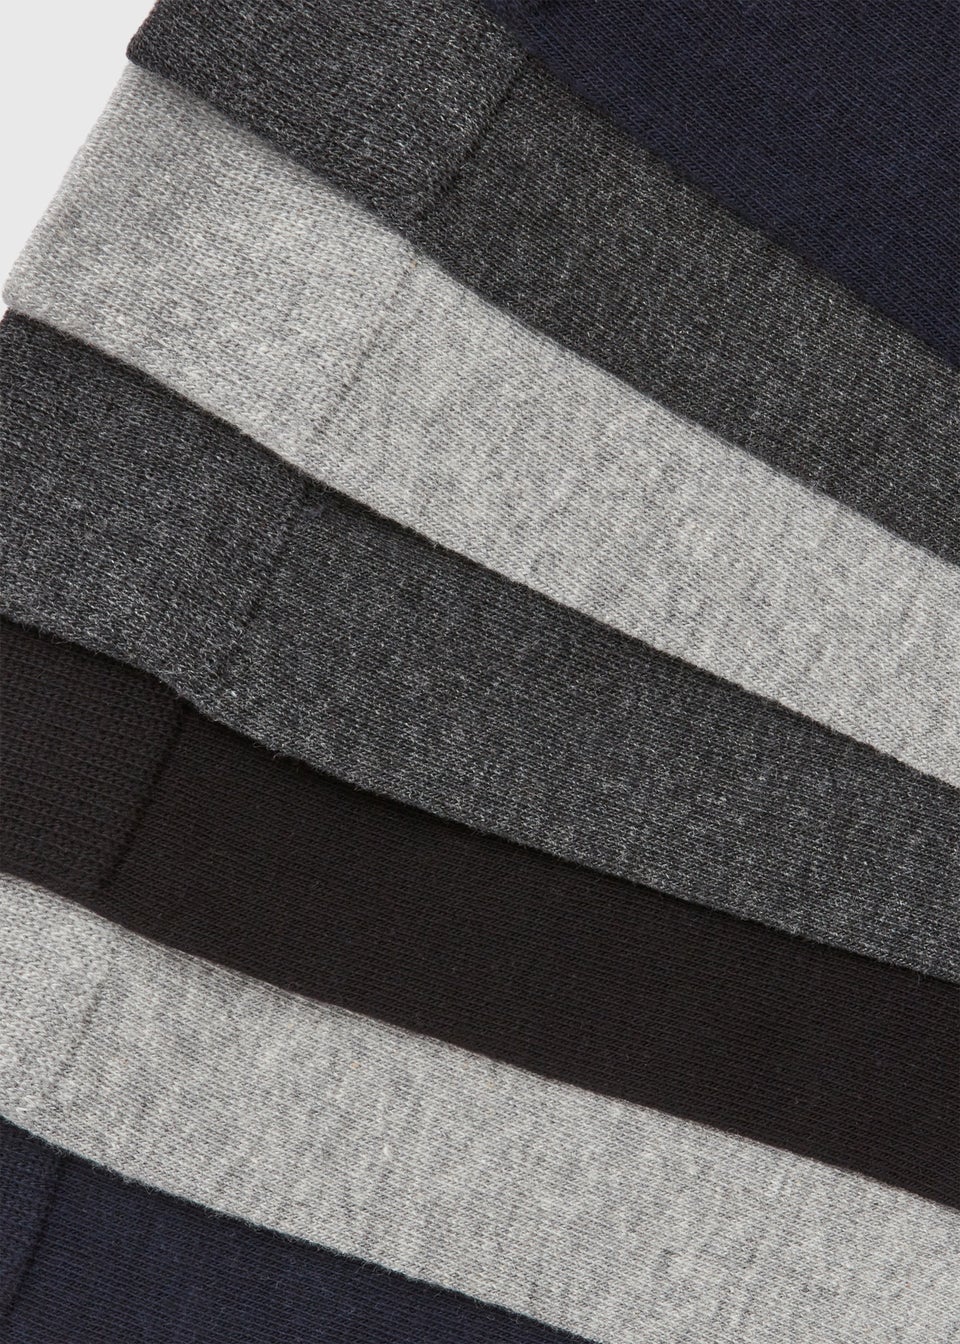 7 Pack Grey/ Marl/ Navy Plain Socks